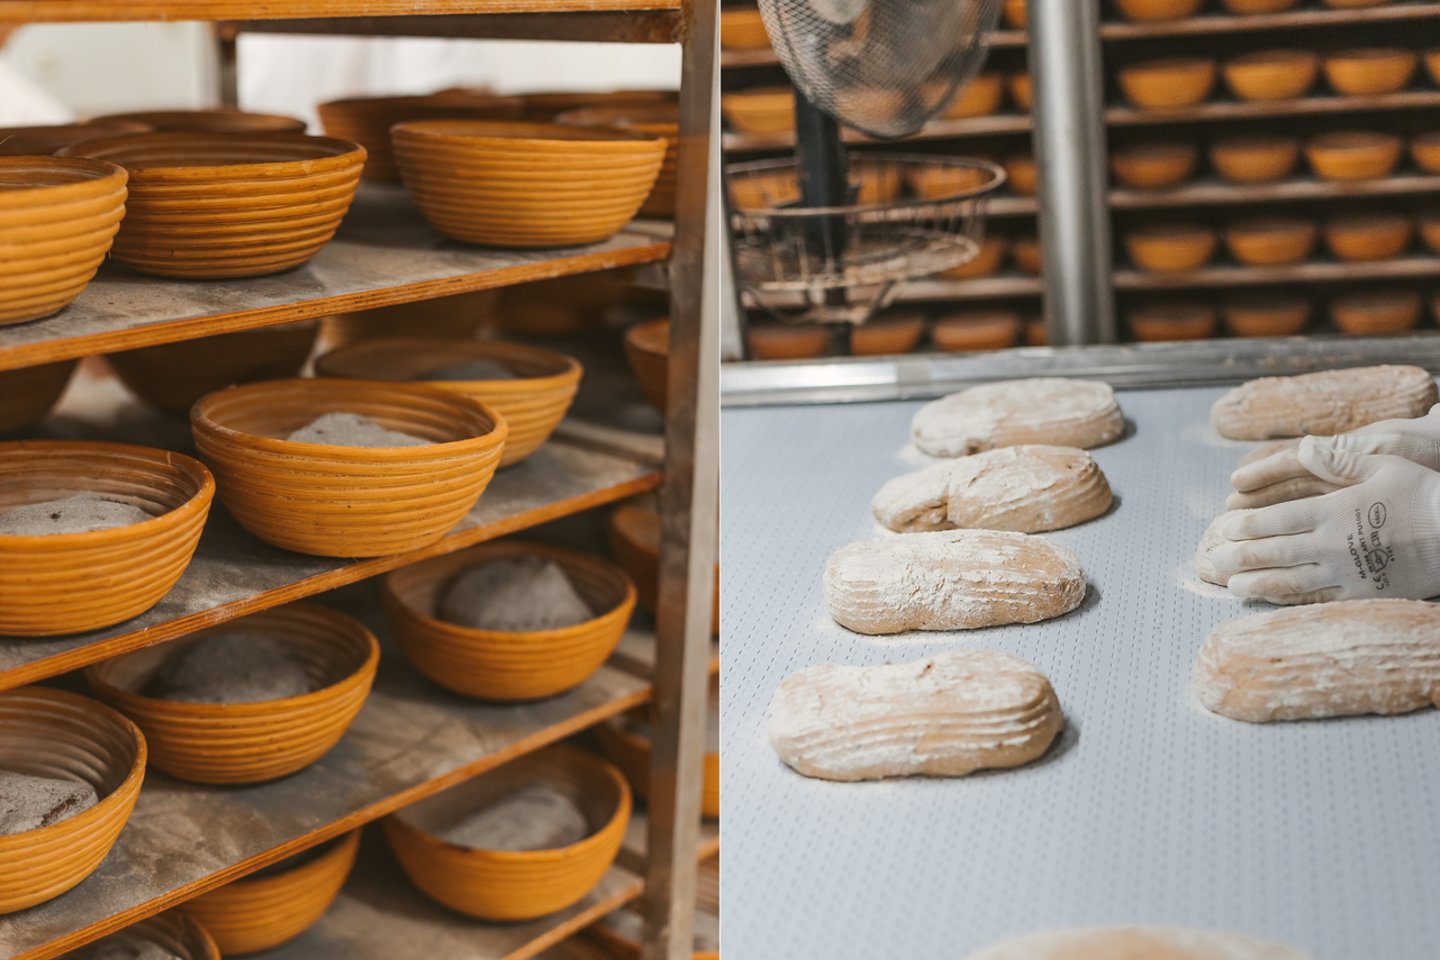 Per tūkstančius metų duonos receptūra mažai pasikeitė: ją kepant naudojami tie patys ingredientai – miltai, druska, vanduo ir natūraliai susidariusios mielės. <br>Pranešimo autorių nuotr.